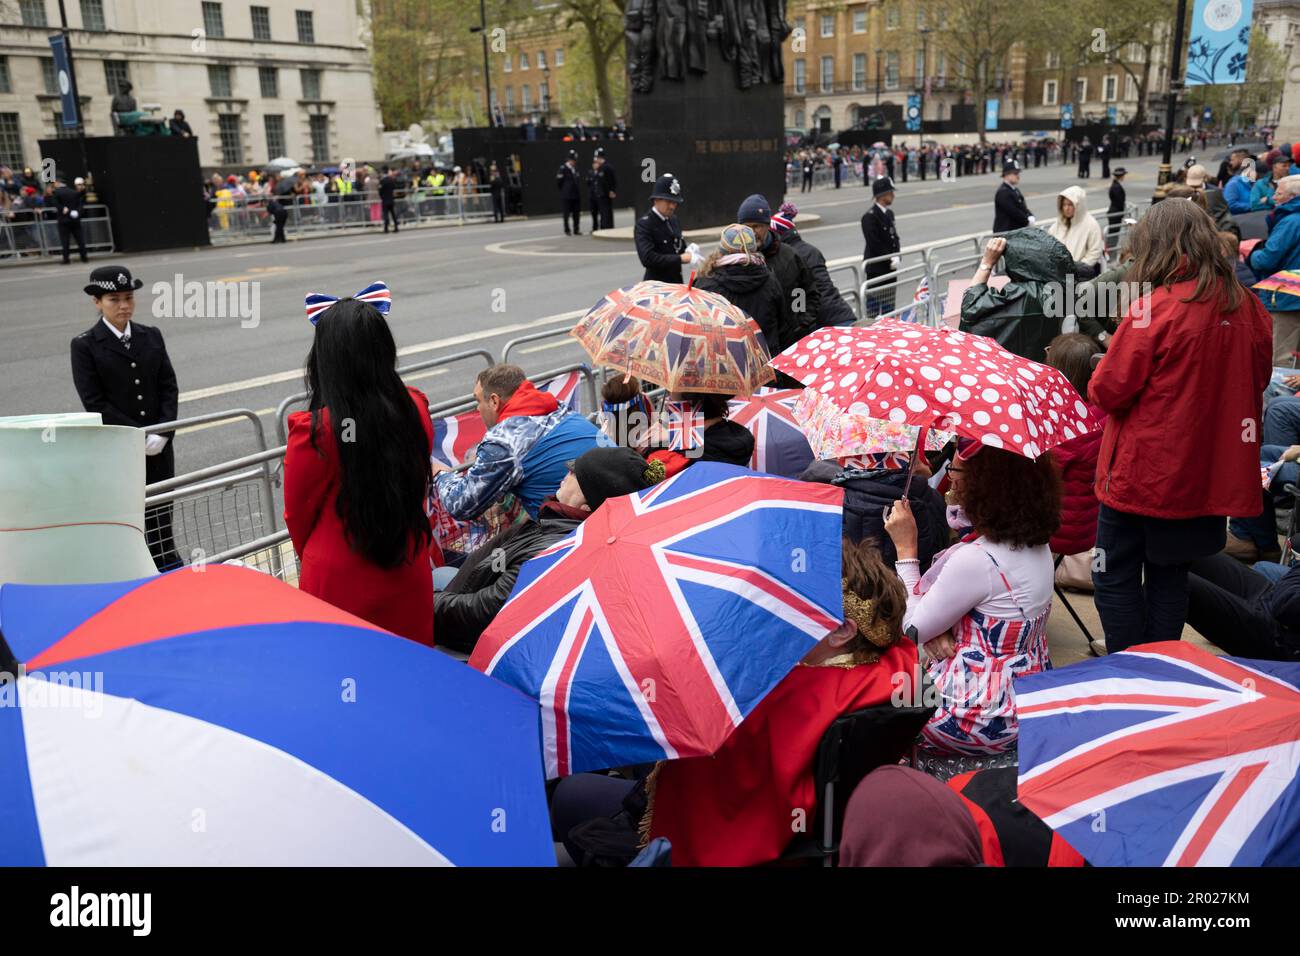 Königliche Fans warten im Regen darauf, dass König Charles auf seinem Weg zur Krönung in Westminster Abbey durch Whitehall fährt. Karl trat am 8. September 2022 auf den Thron, nach dem Tod seiner Mutter, ihrer verstorbenen Königin Elizabeth II. Die Krönung von König Karl III. Findet etwa 6 Monate später am 6. Mai 2023 statt. Stockfoto